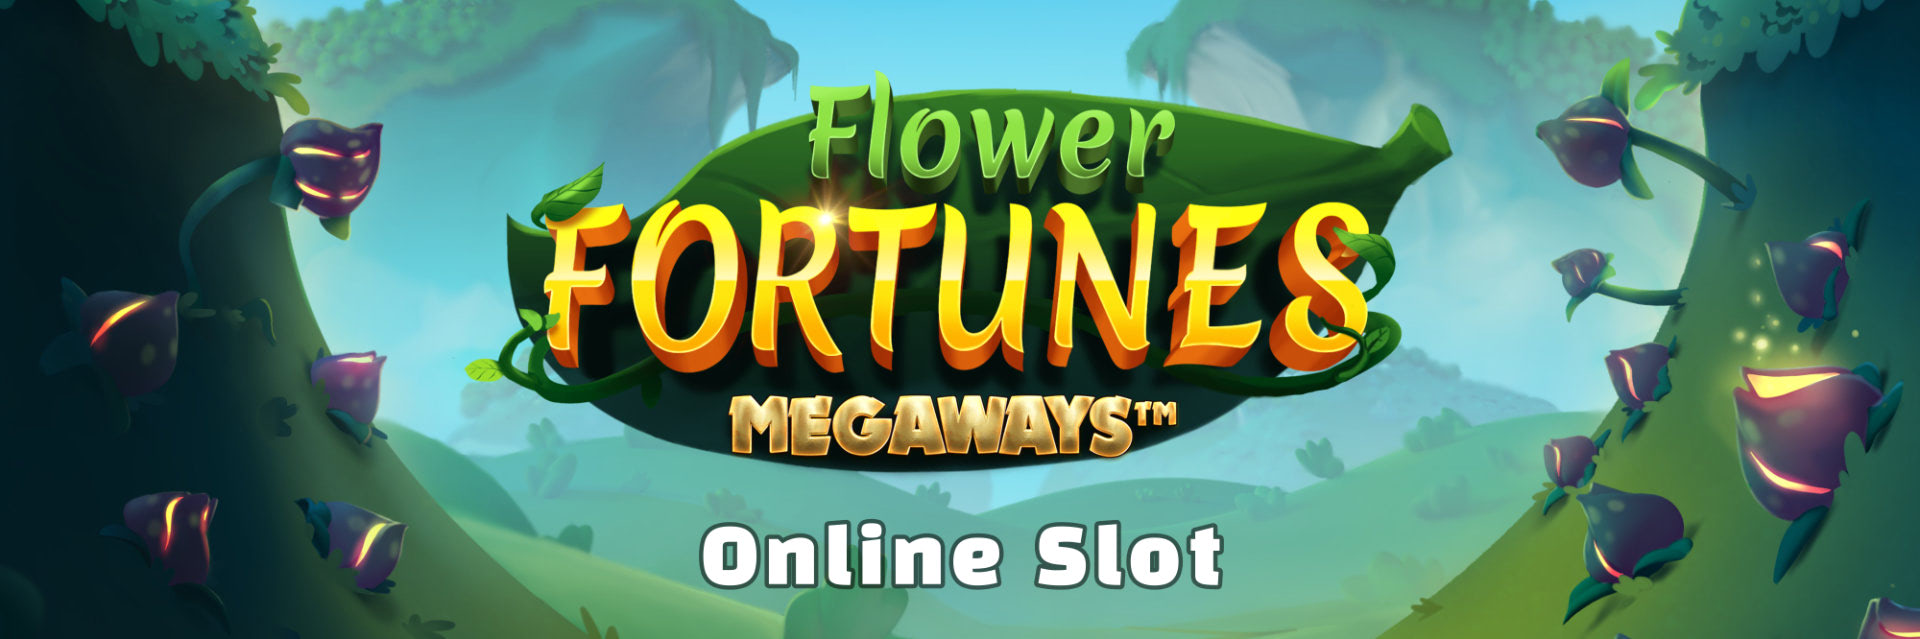 Flower Fortunes cover bg